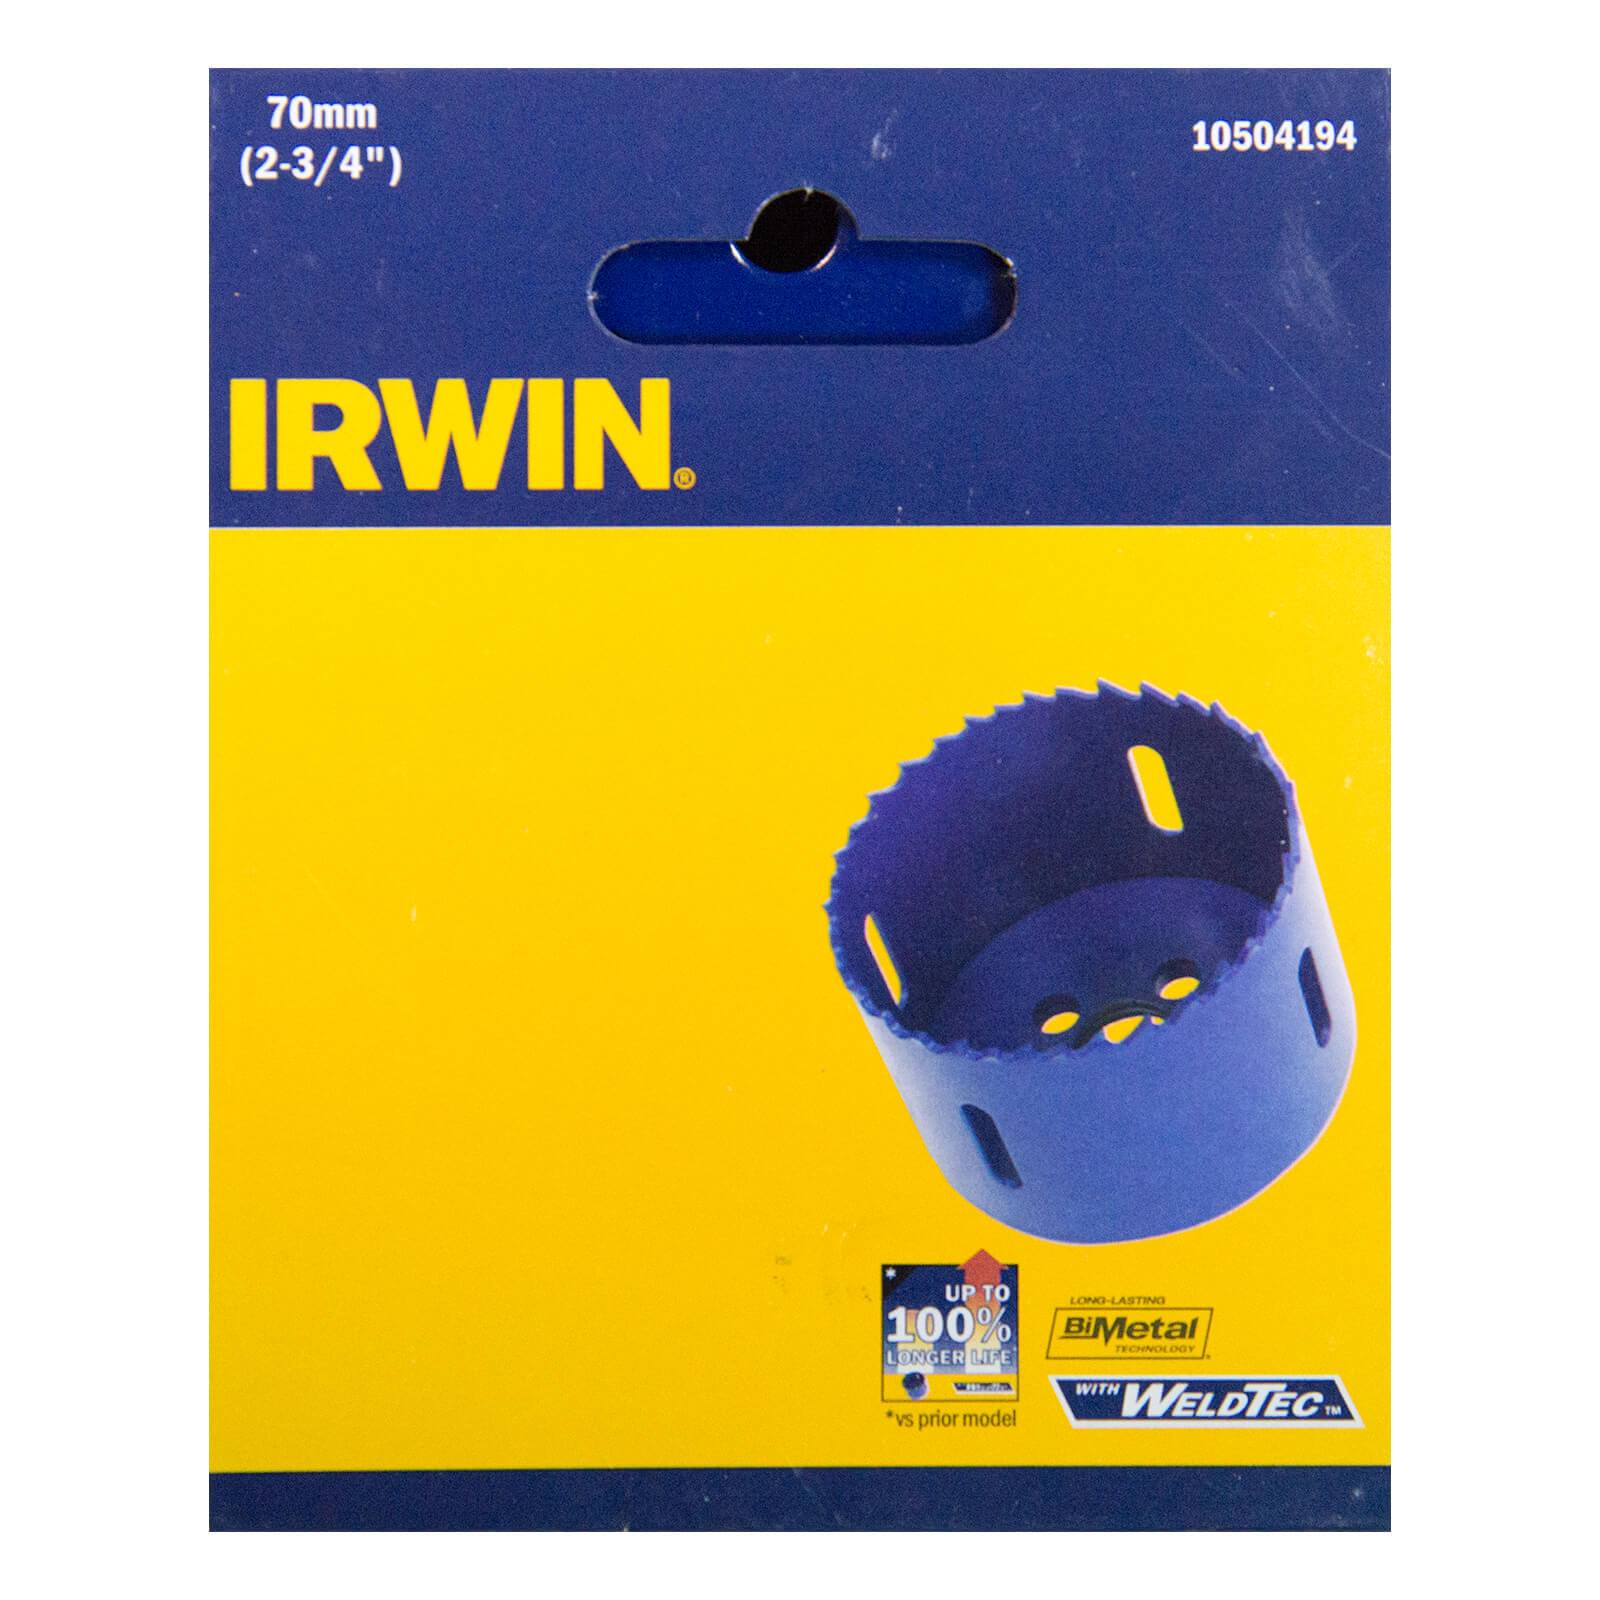 IRWIN Bi-Metal Hole Saw - 70 mm